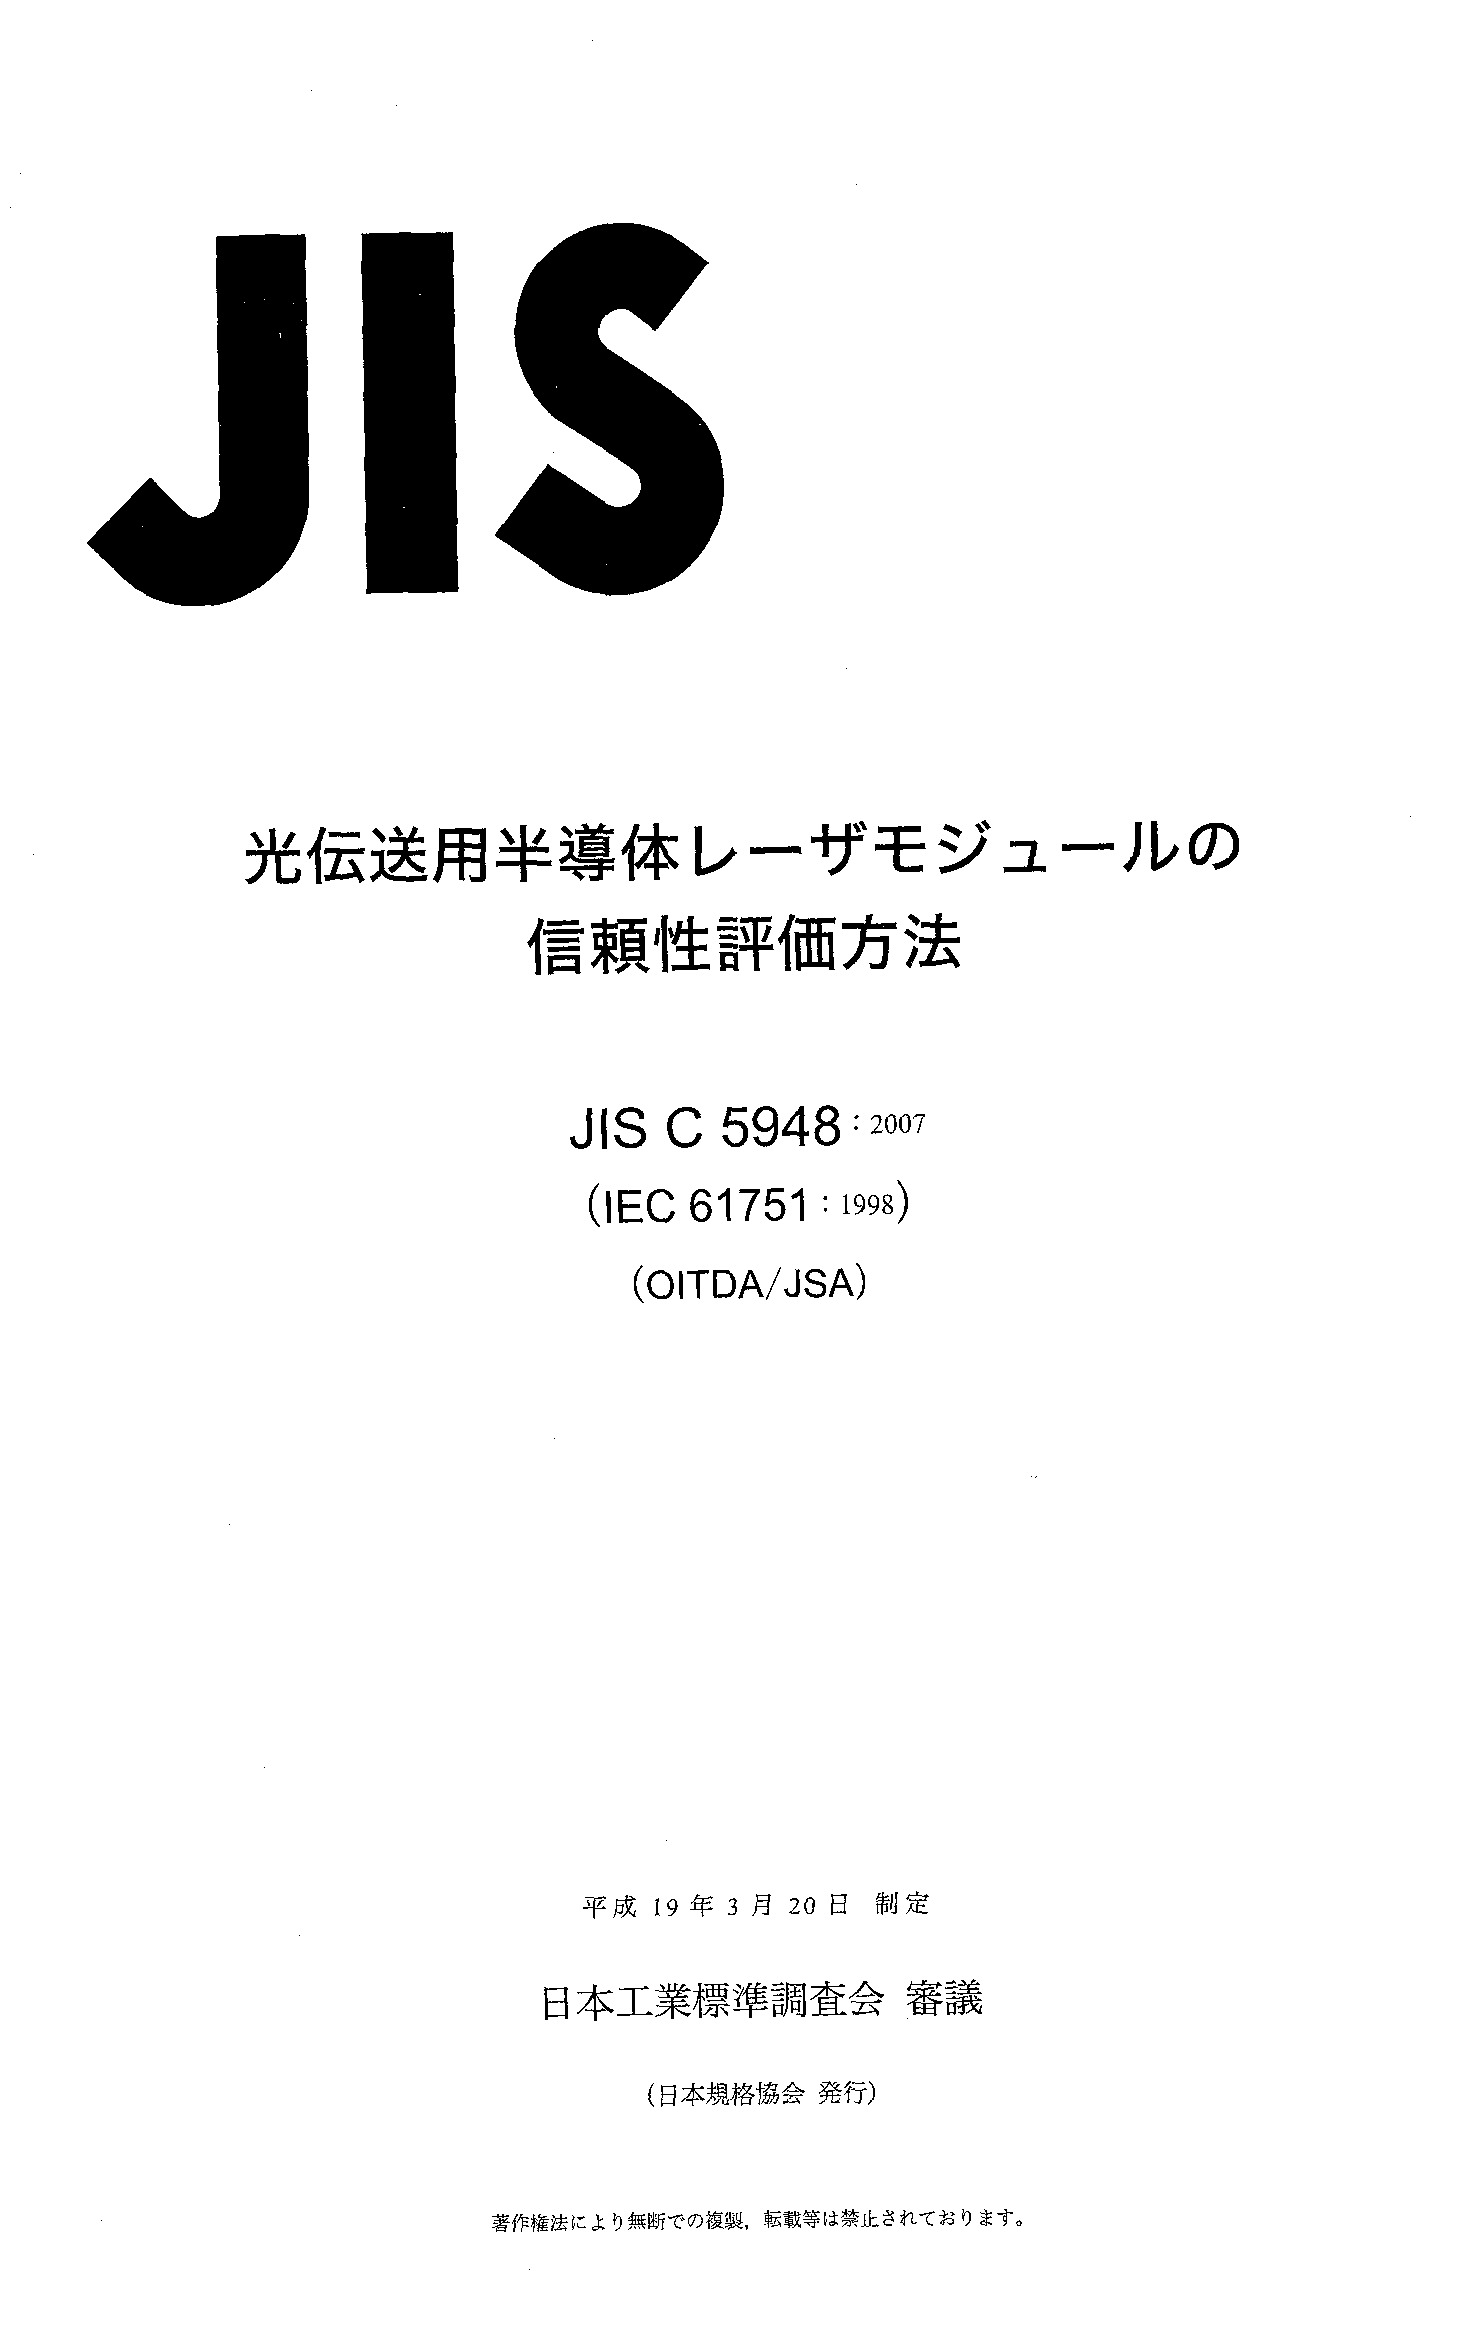 JIS C 5948:2007